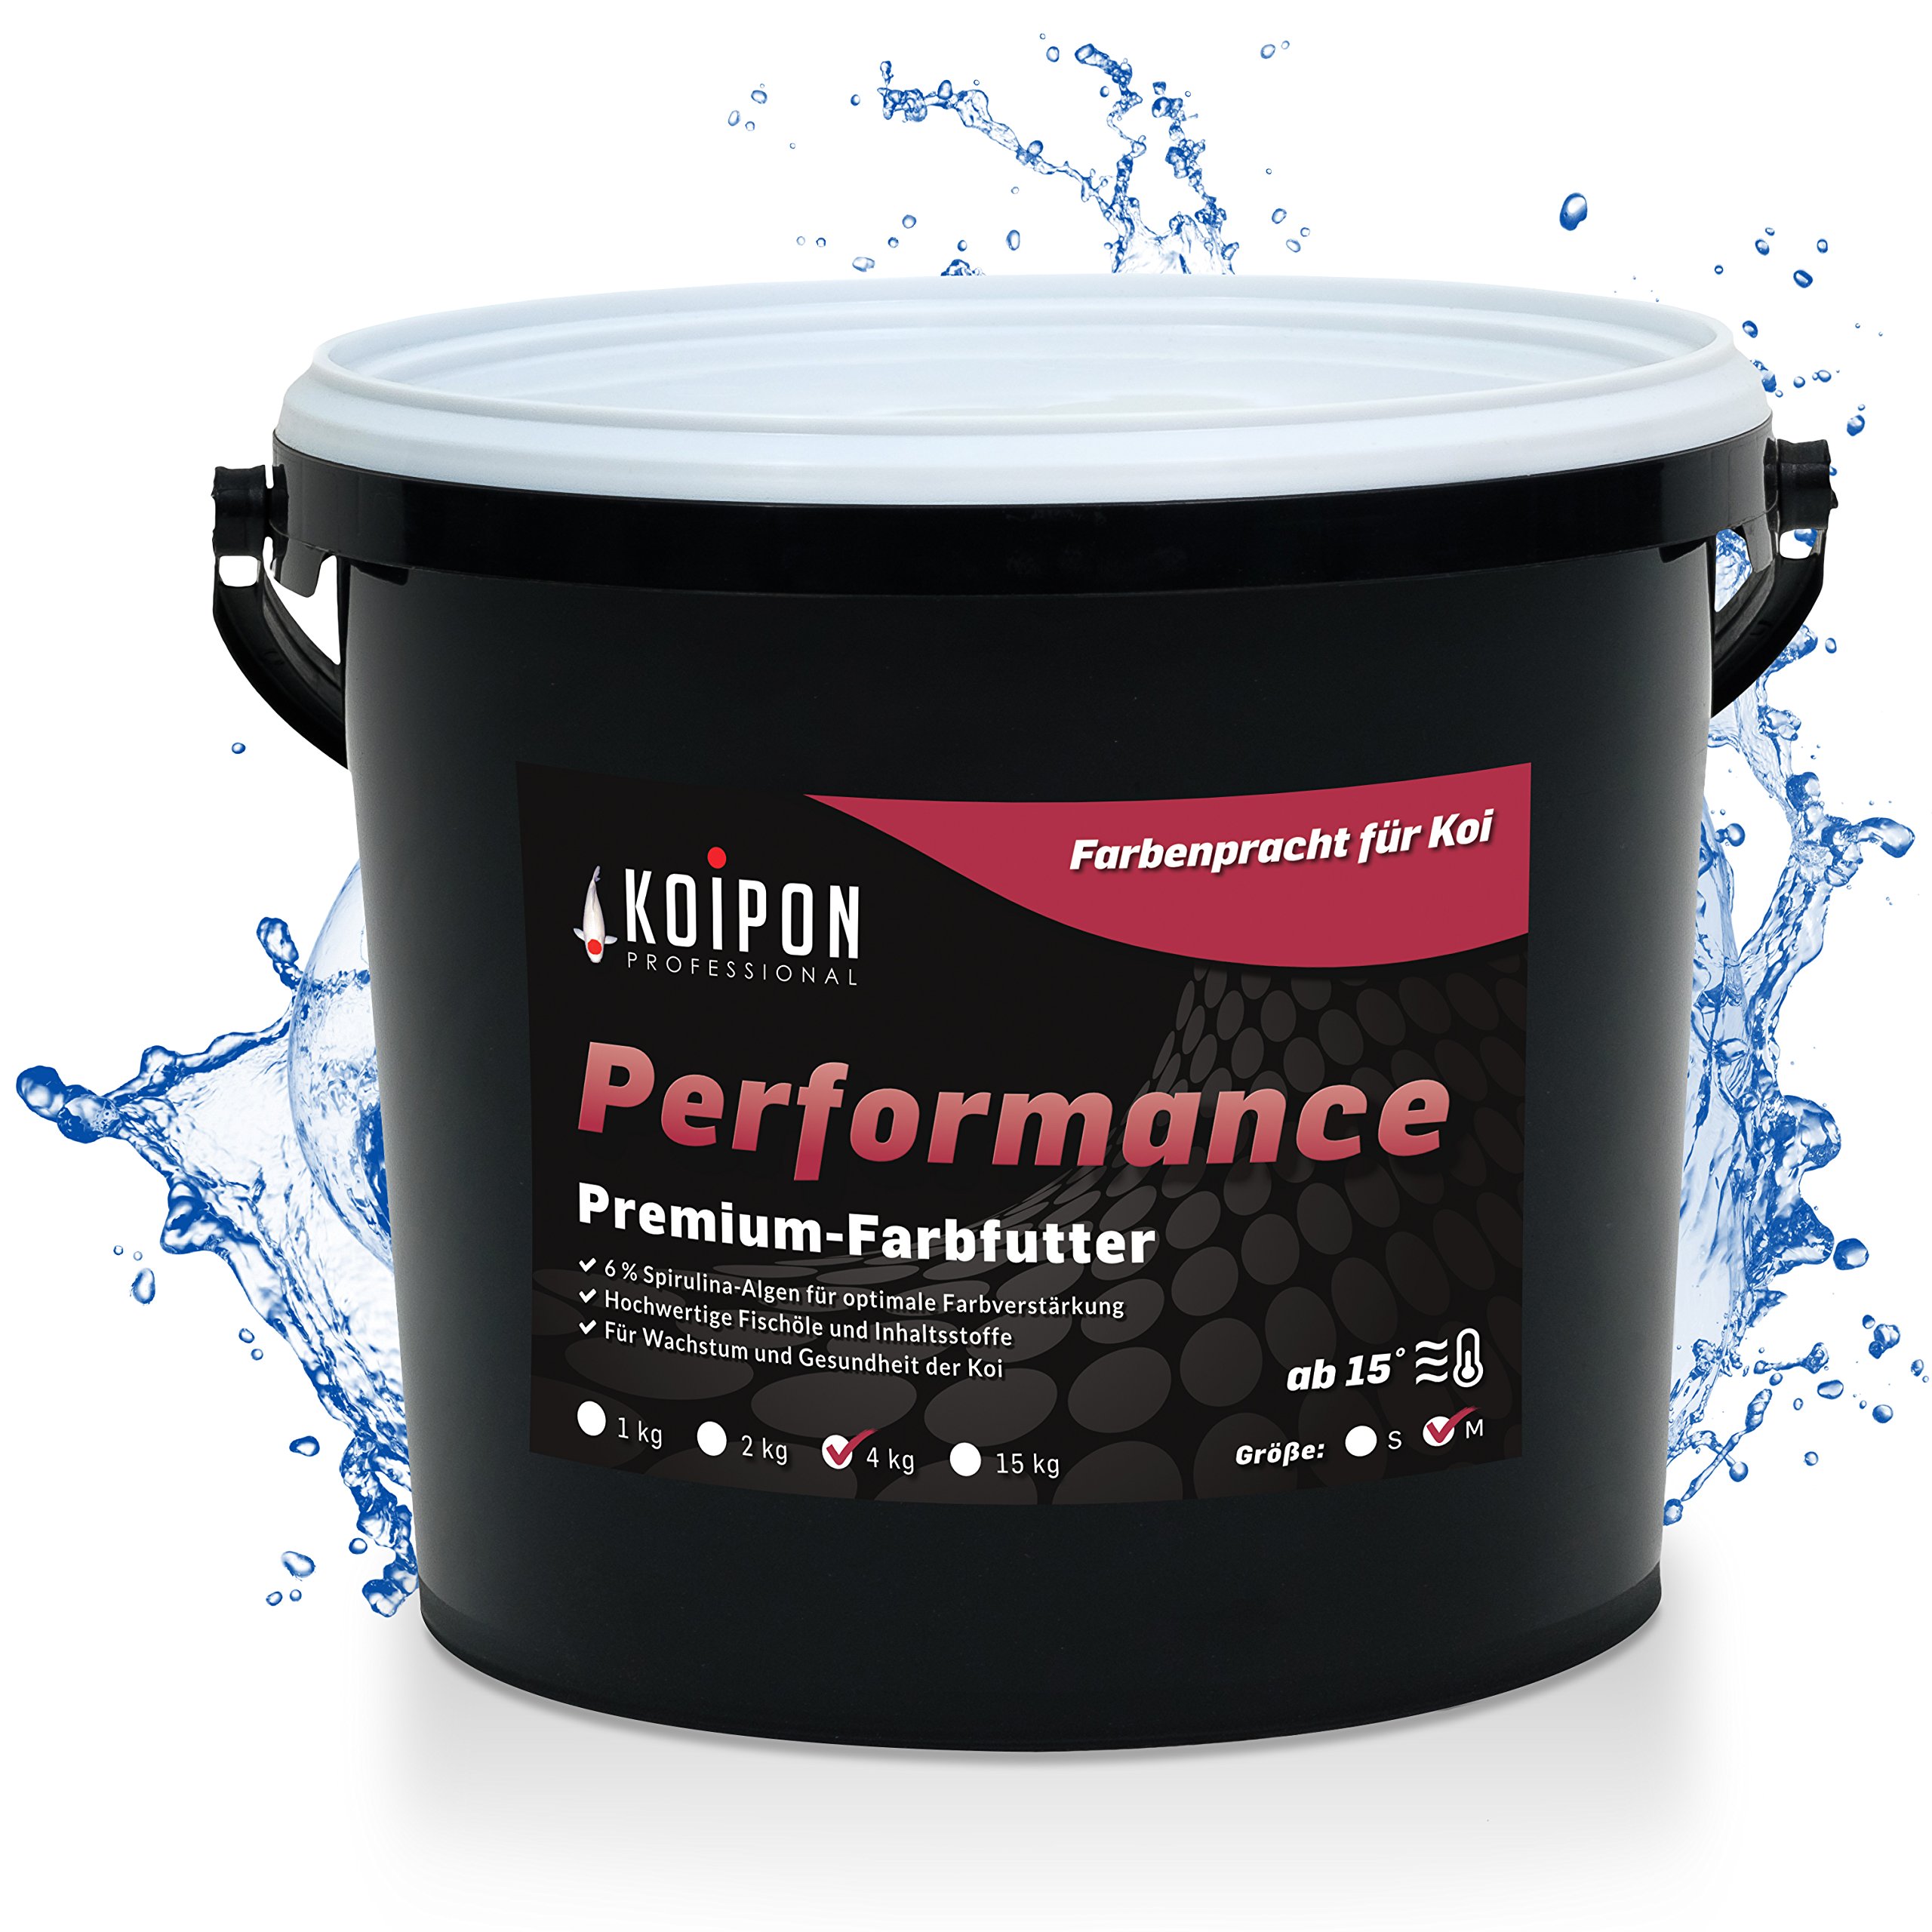 KOIPON Performance 4 kg Koifutter Sommer für Farbe, schwimmend, 6% Spirulina, Teichfutter 6 mm Pellets, Koifutter als Goldfischfutter geeignet